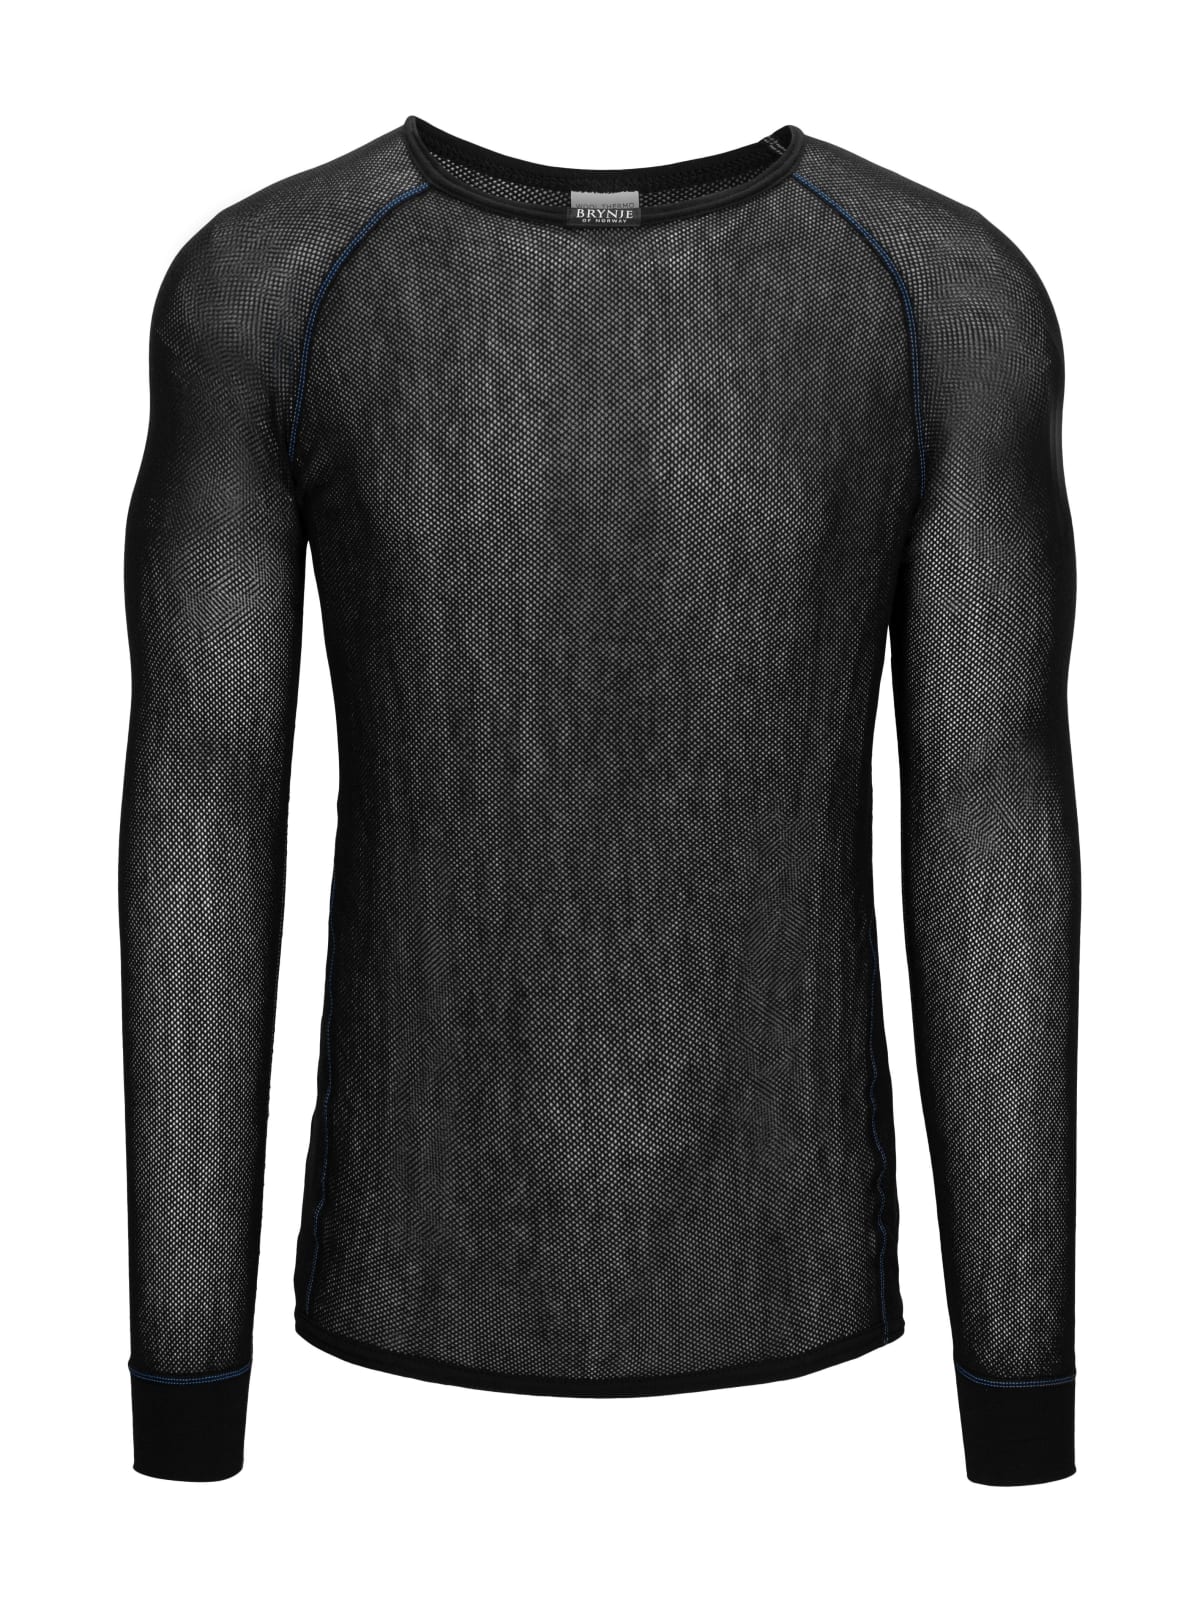 Brynje - Wool Light Shirt black | Bowgearshop